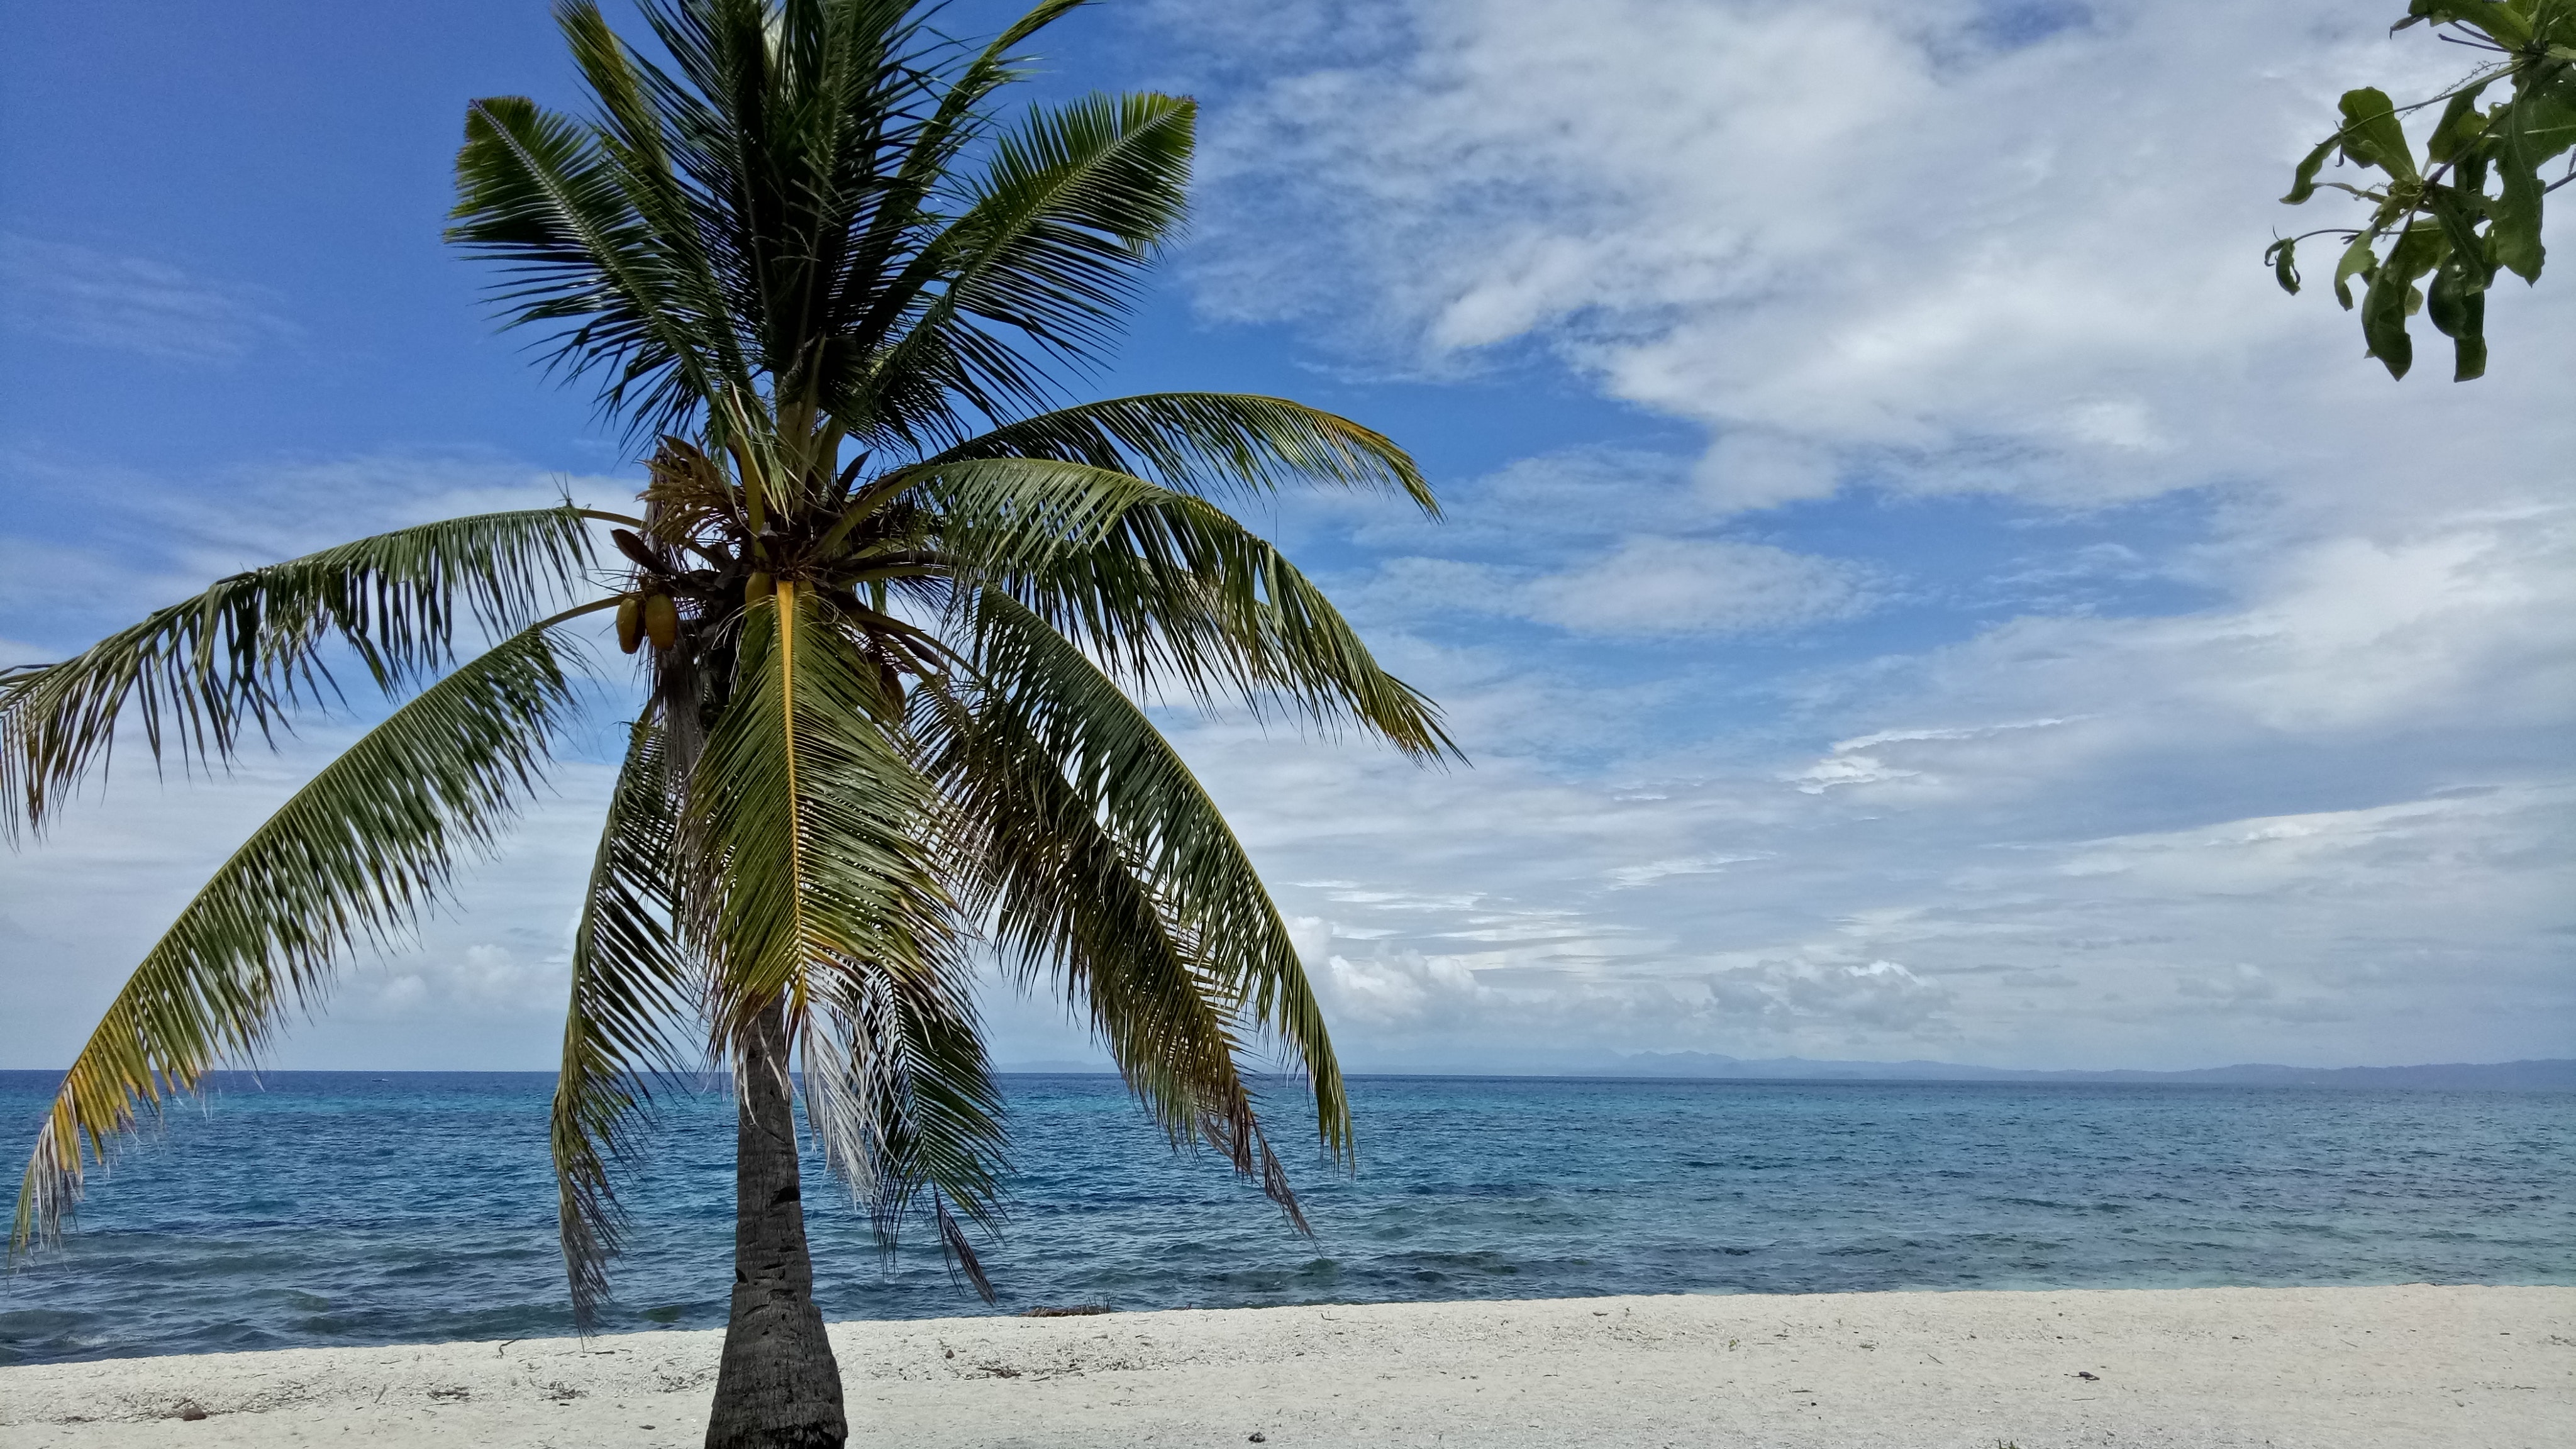 Hình ảnh cây dừa gần biển